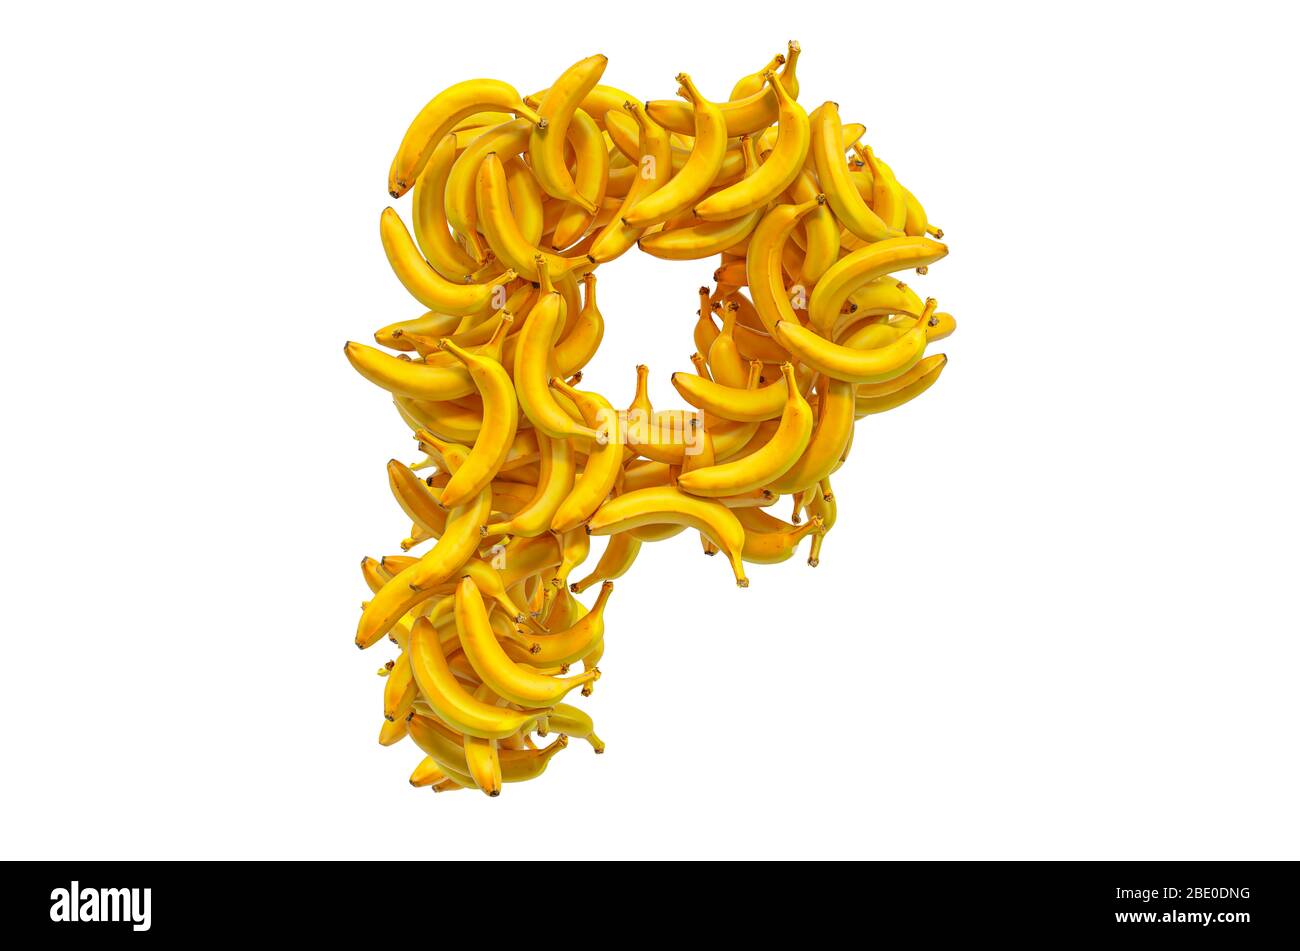 Lettre P de bananes, rendu tridimensionnel isolé sur fond blanc Banque D'Images